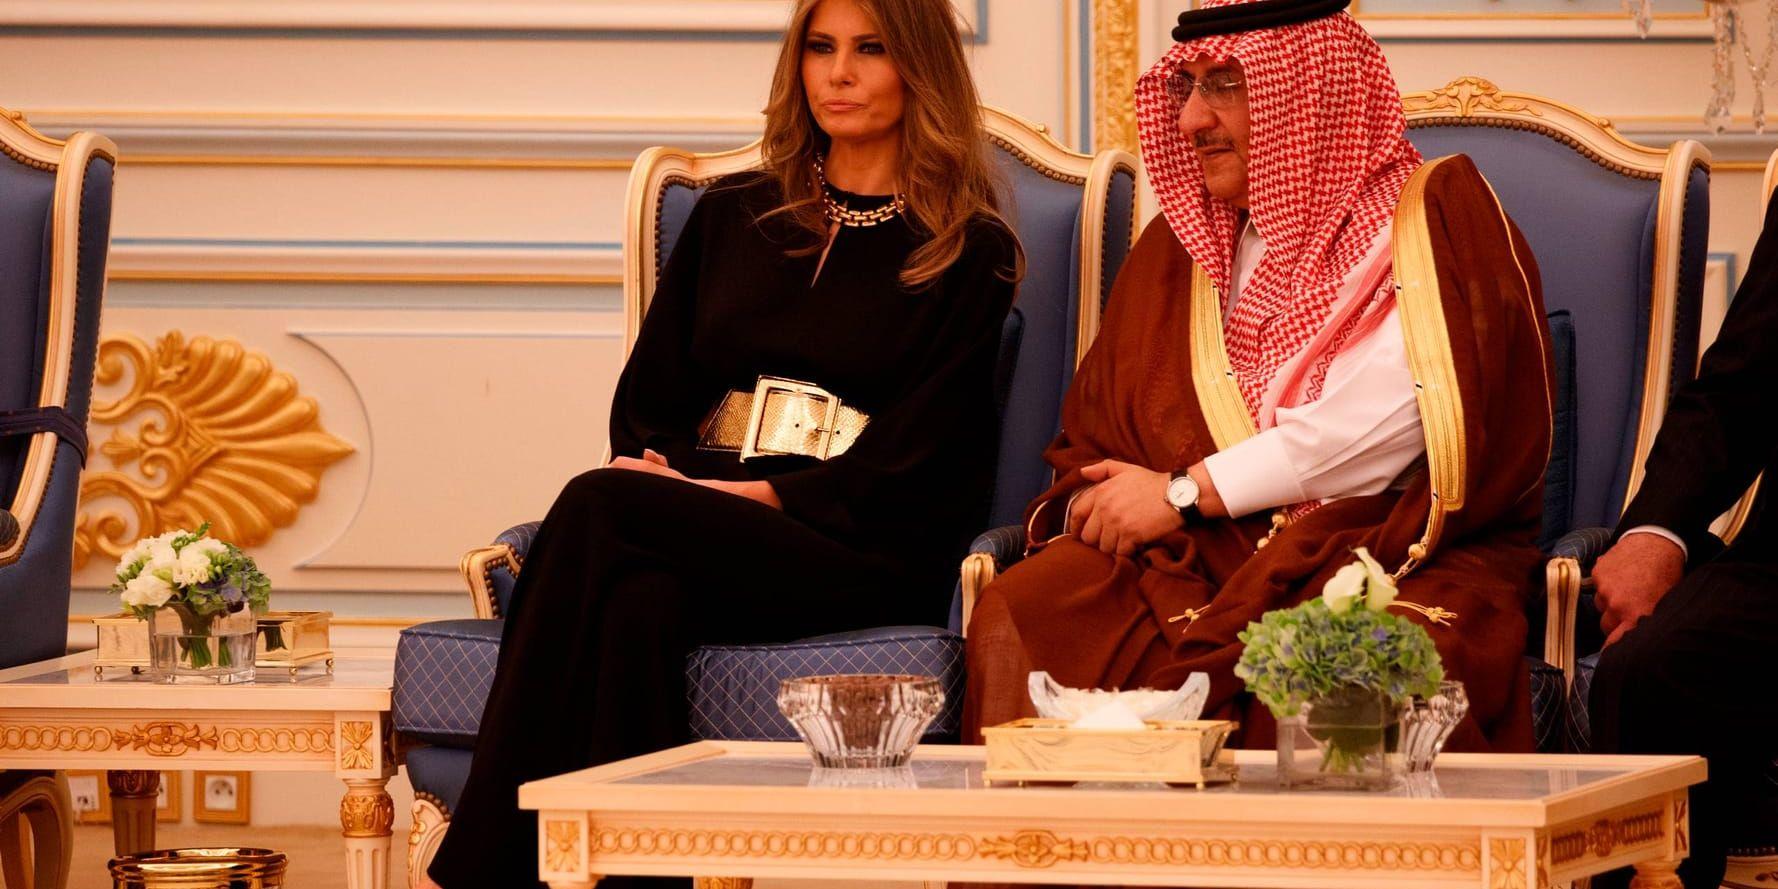 Melania Trump i samtal med saudiske kronprinsen Muhammad bin Nayef i det kungliga palatset i Riyadh.